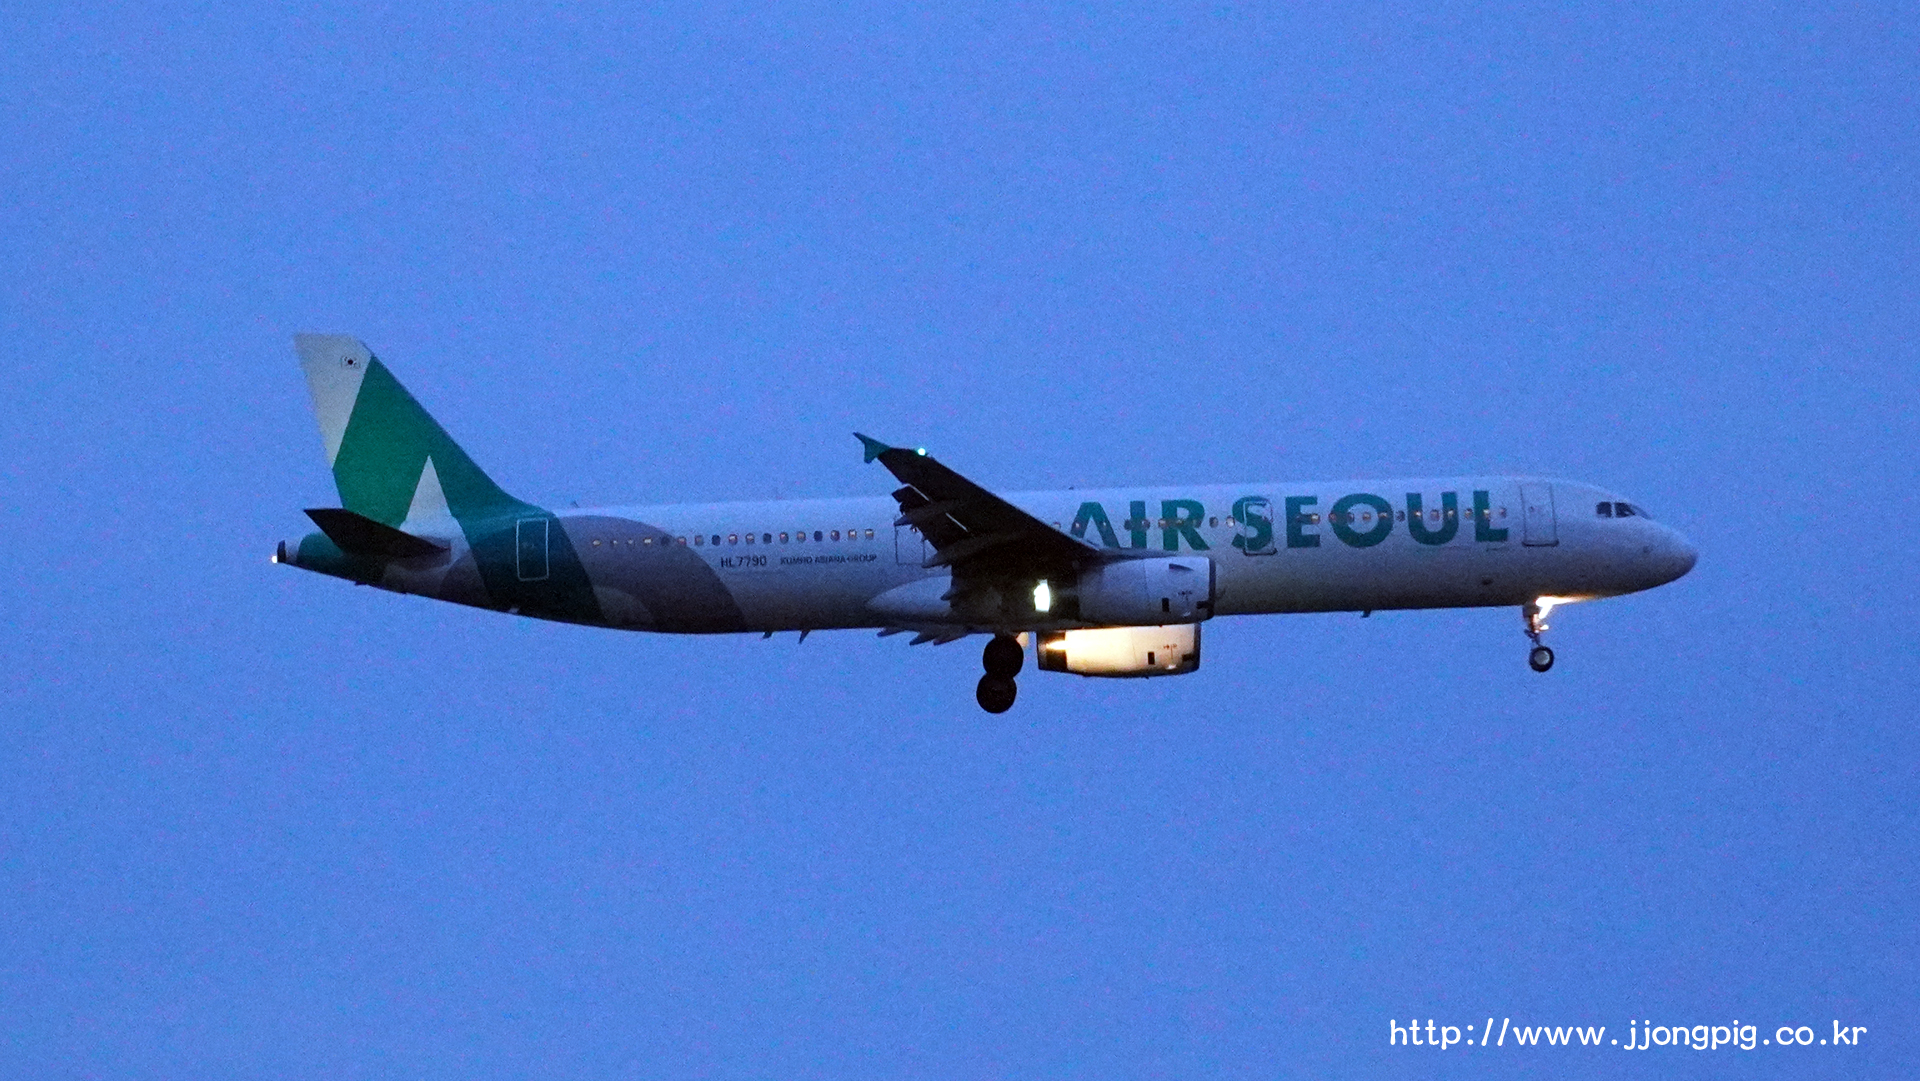 Air Seoul HL7790 Airbus A321-200